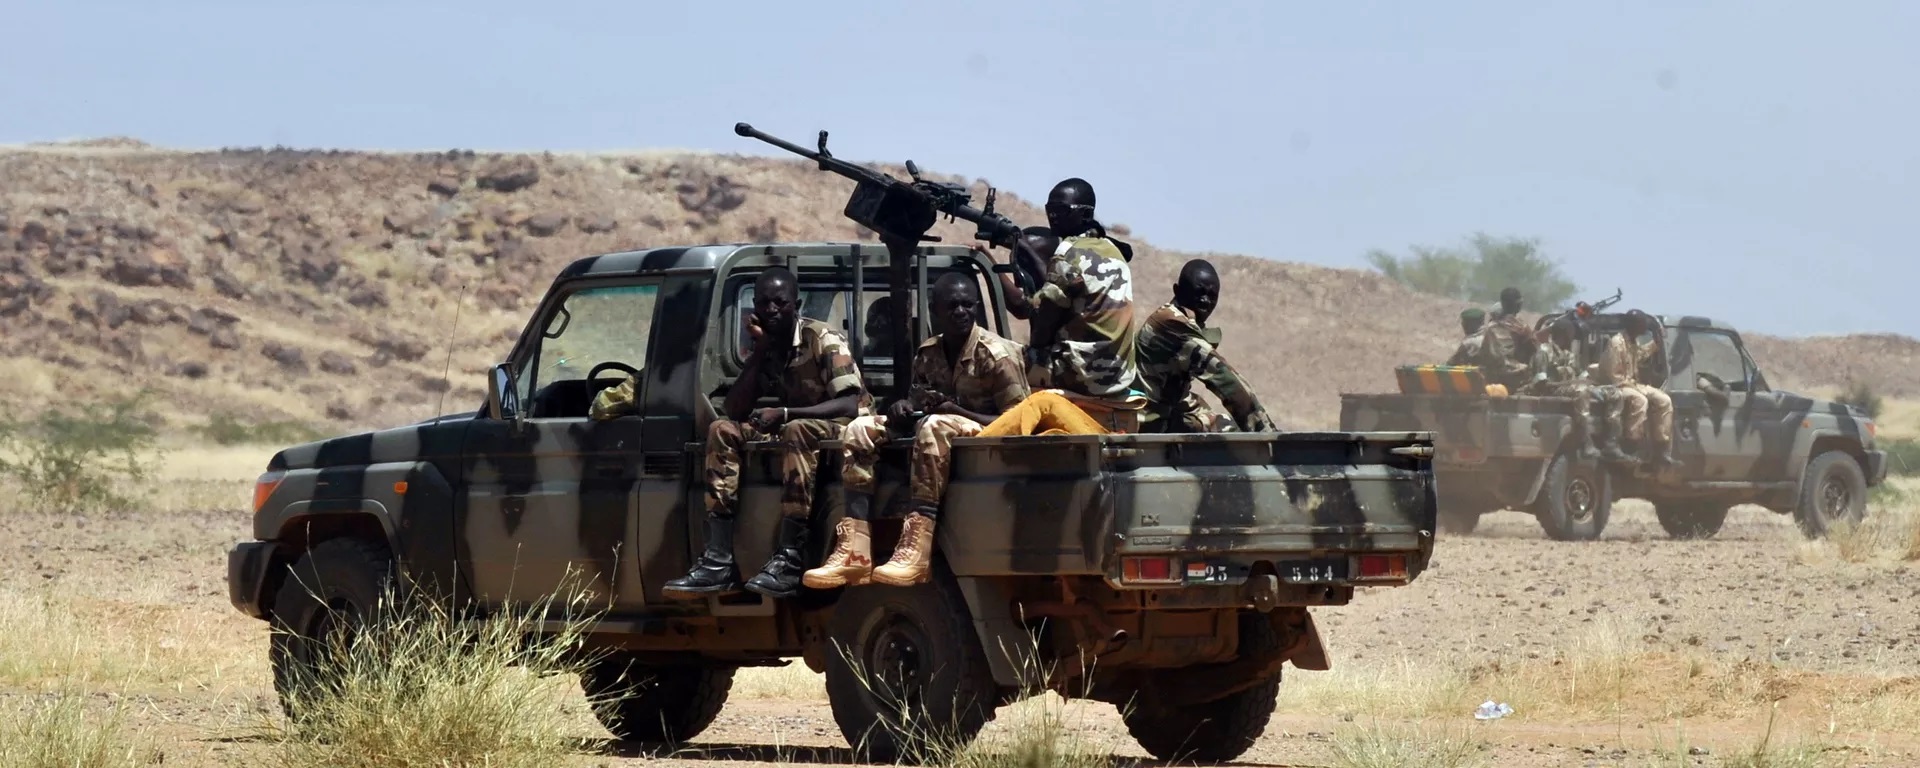 وزارة الدفاع في النيجر تعلن مقتل 29 جنديا جراء هجوم مسلح